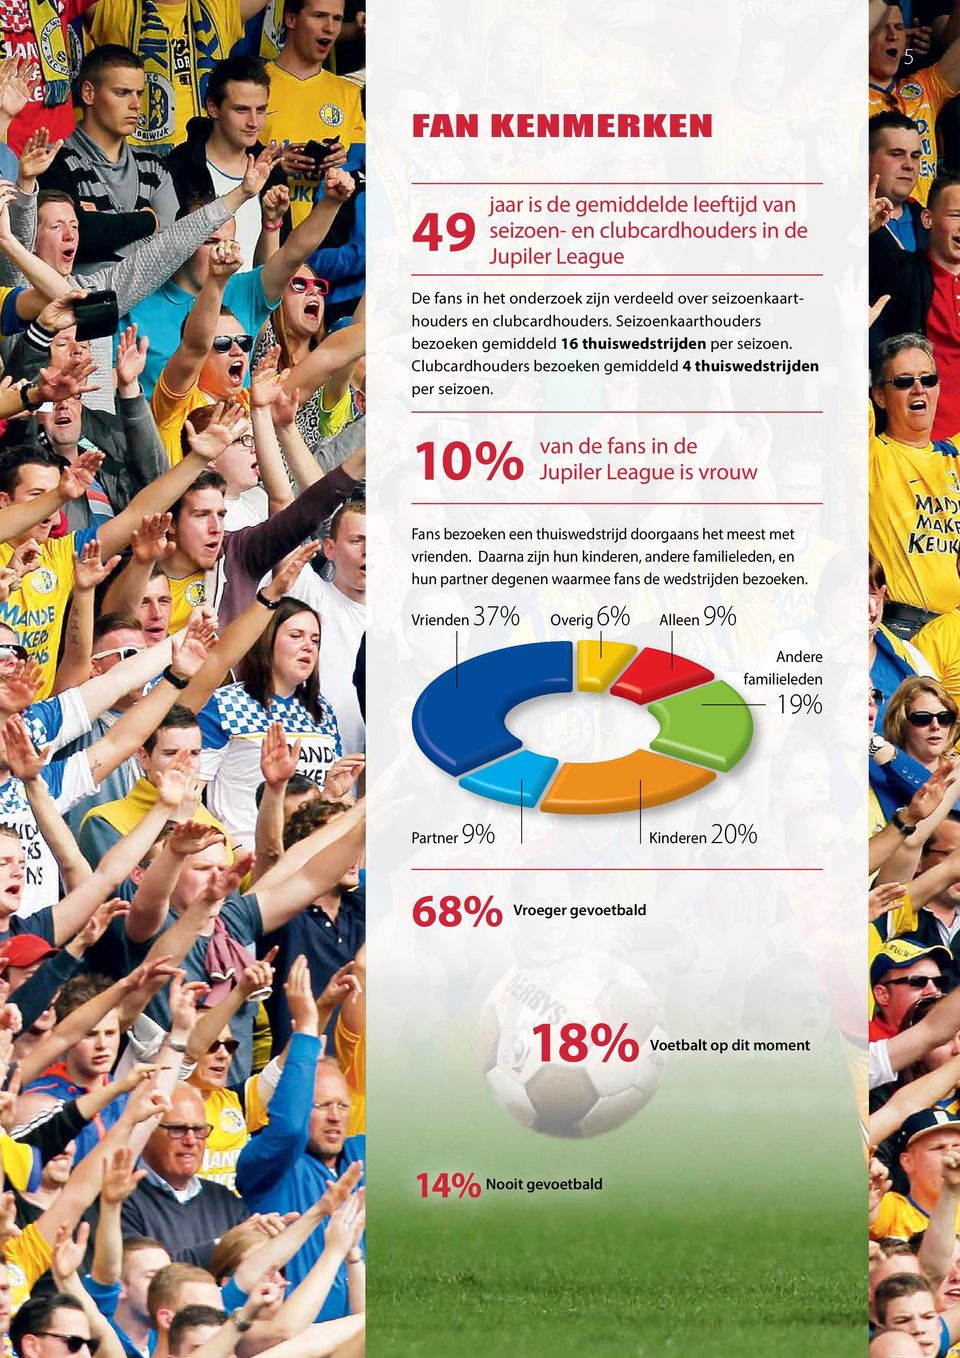 10% van de fans in de Jupiler League is vrouw Fans bezoeken een thuiswedstrijd doorgaans het meest met vrienden.